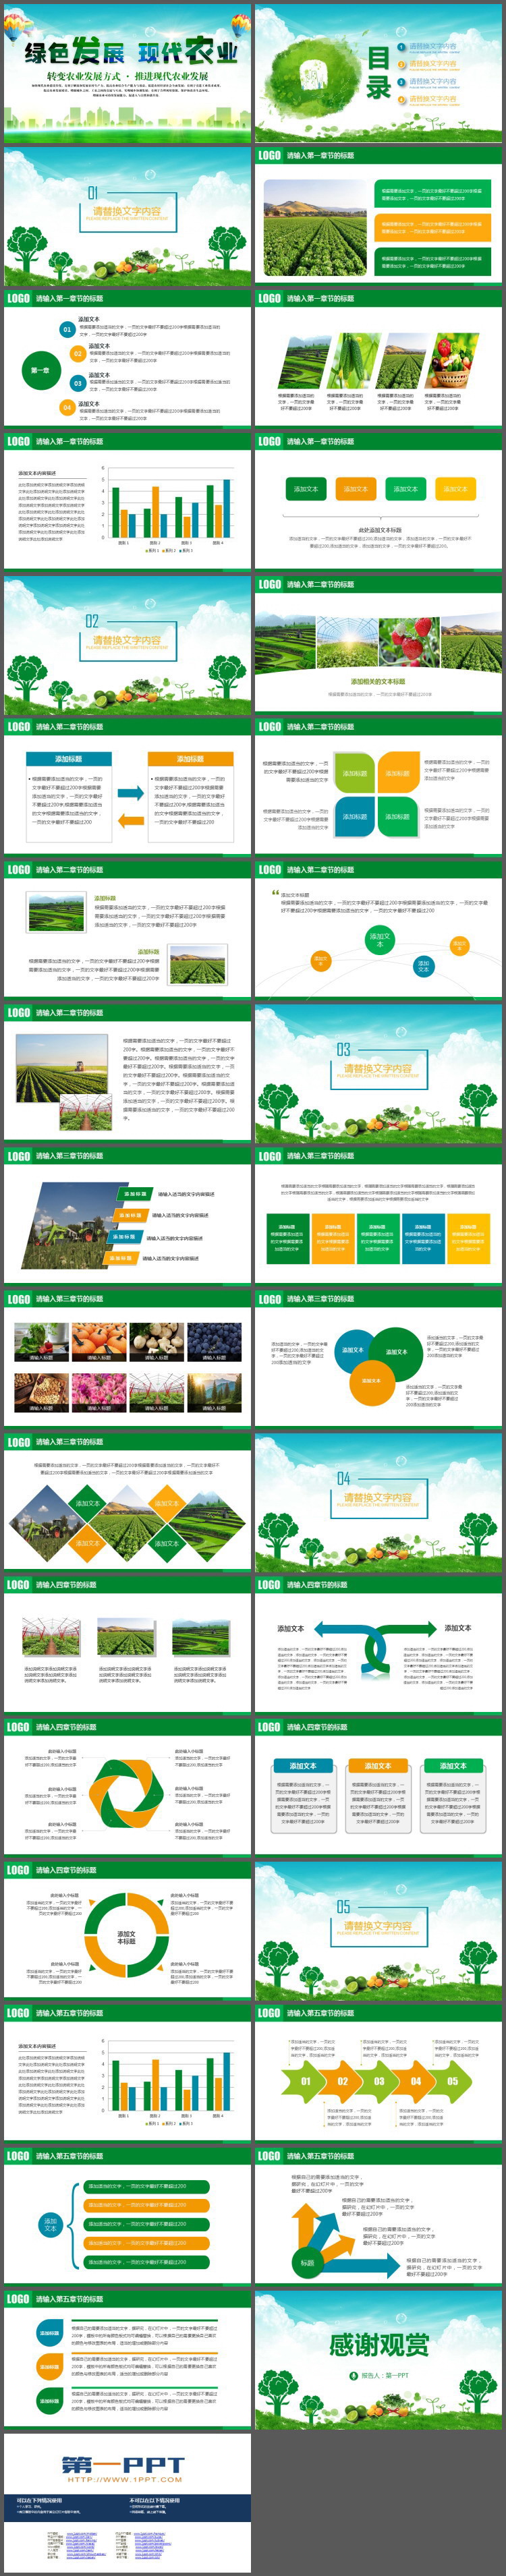 绿色发展现代农业PPT模板免费下载